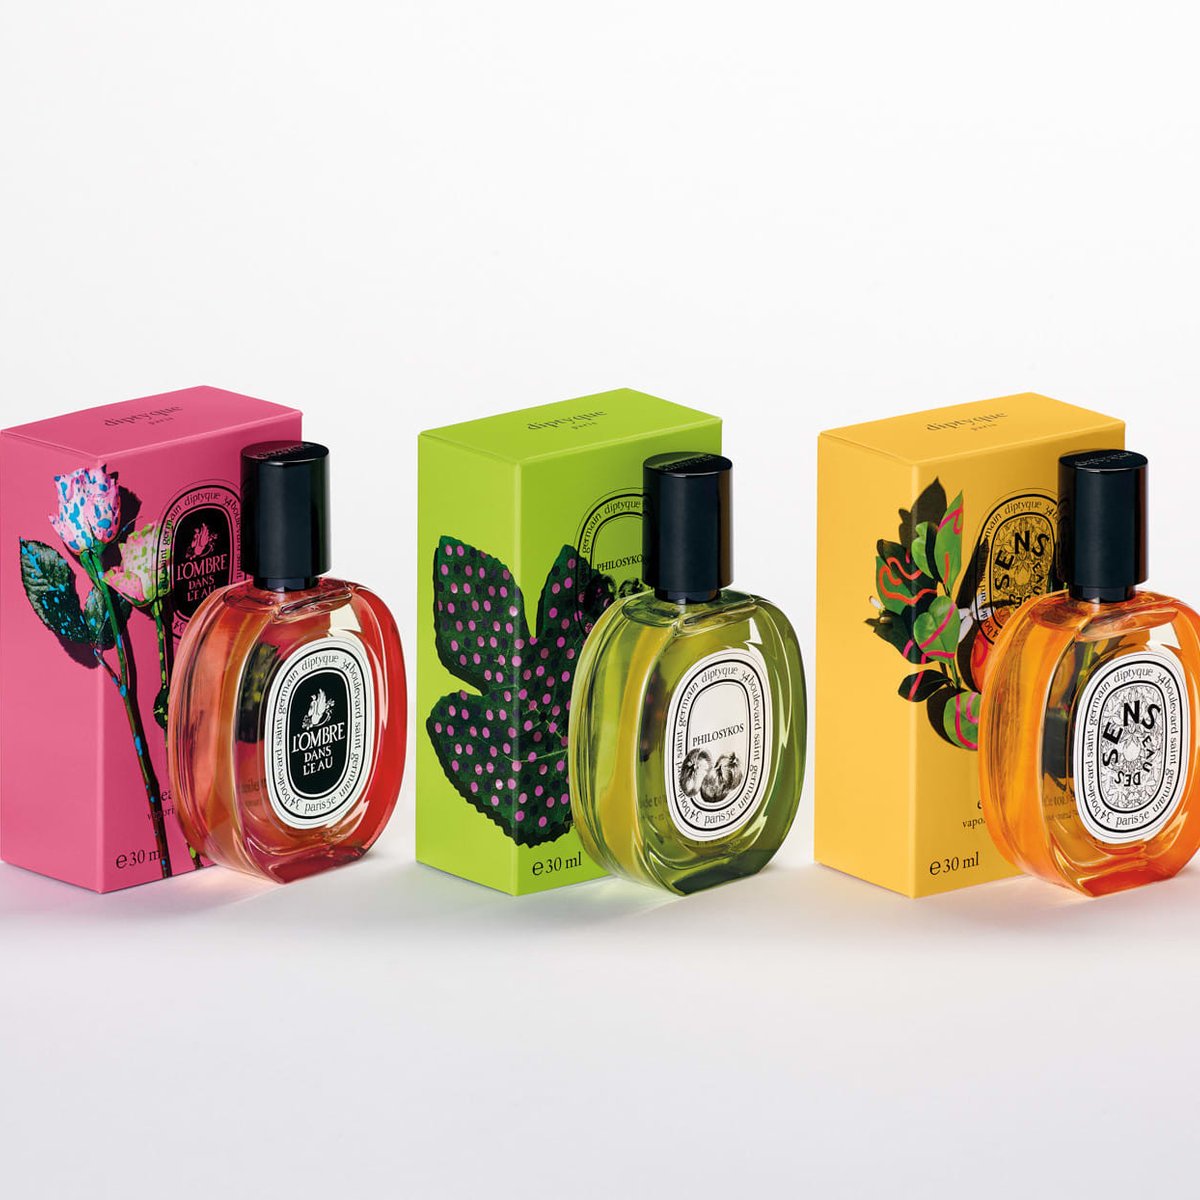 ディプティック」の定番香水が限定パッケージに、新作コレクションの 